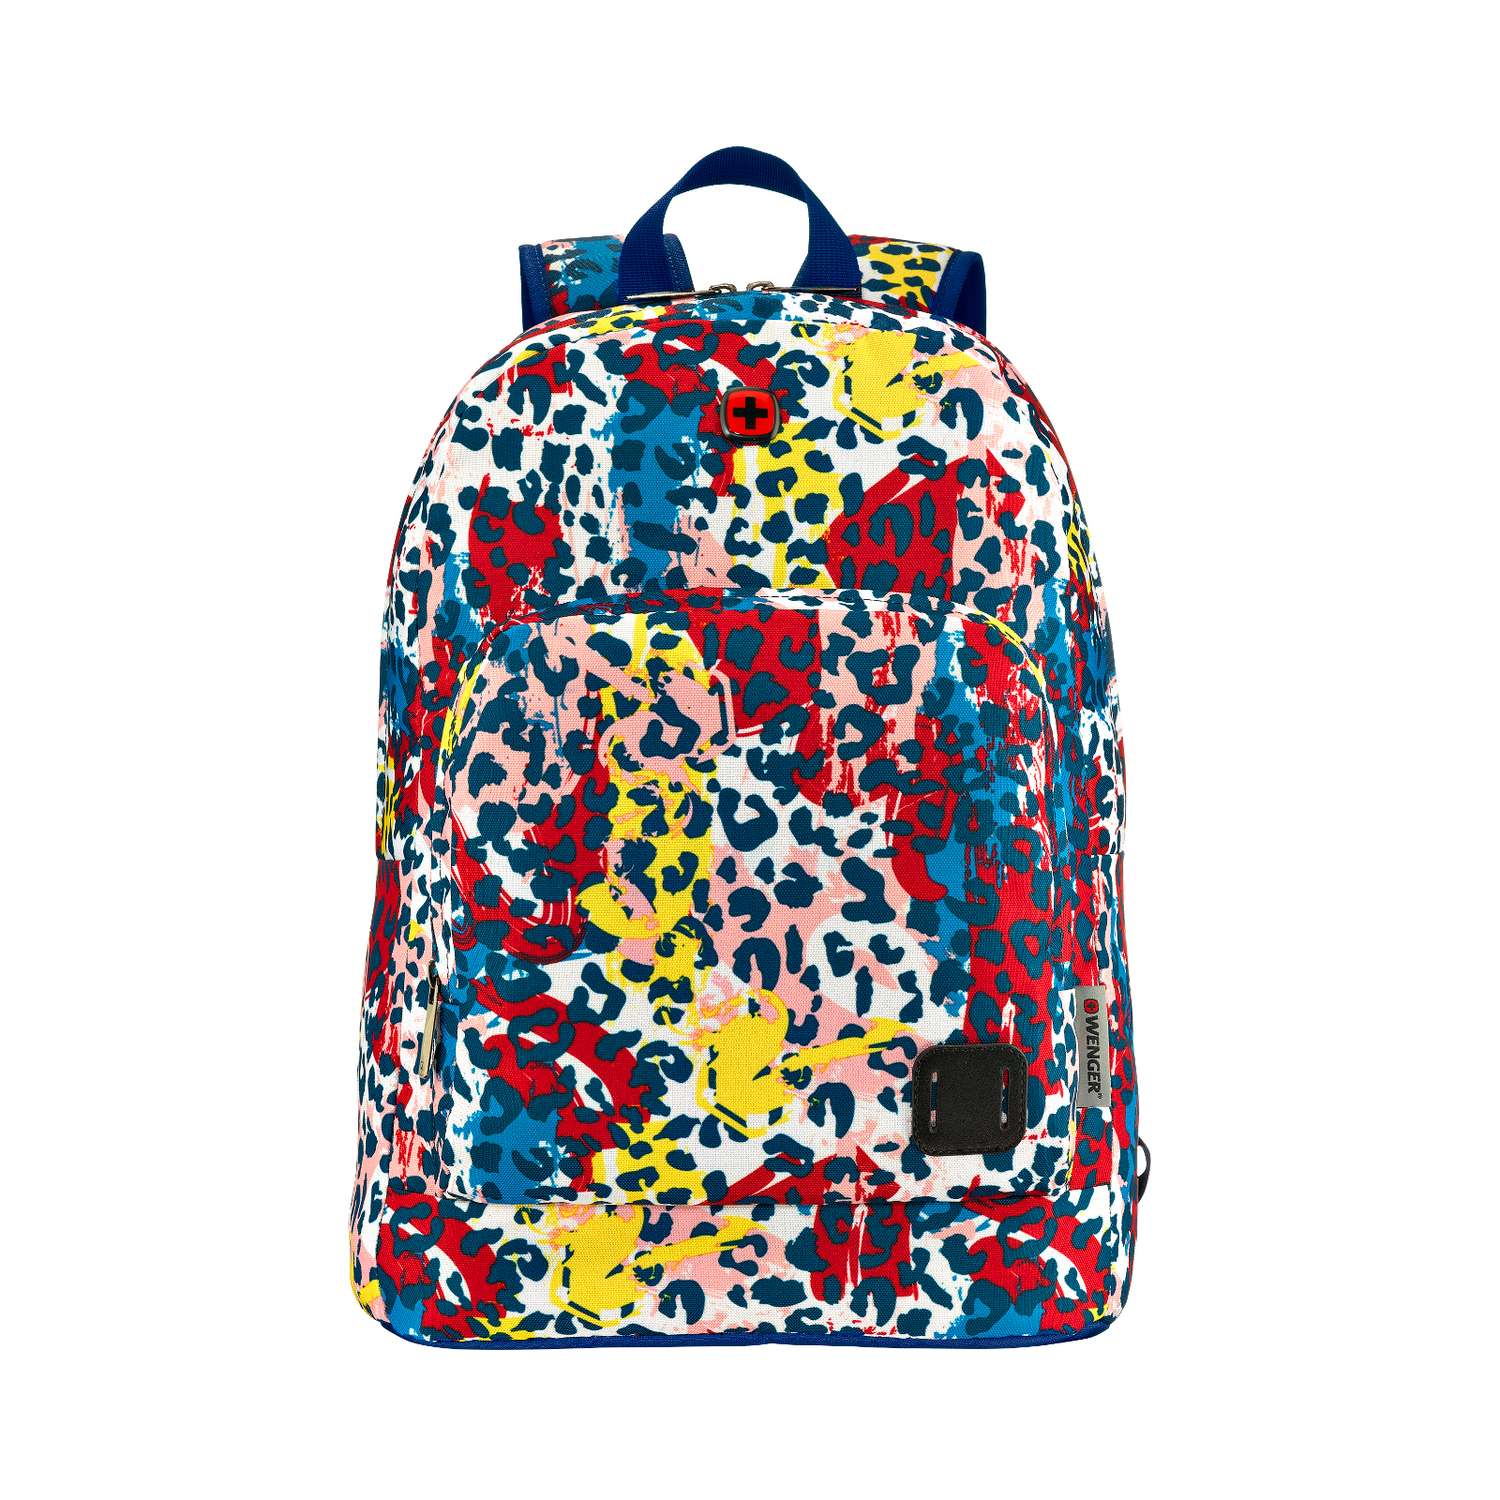 Рюкзак Wenger Crango цветной с леопардовым принтом - фото 1